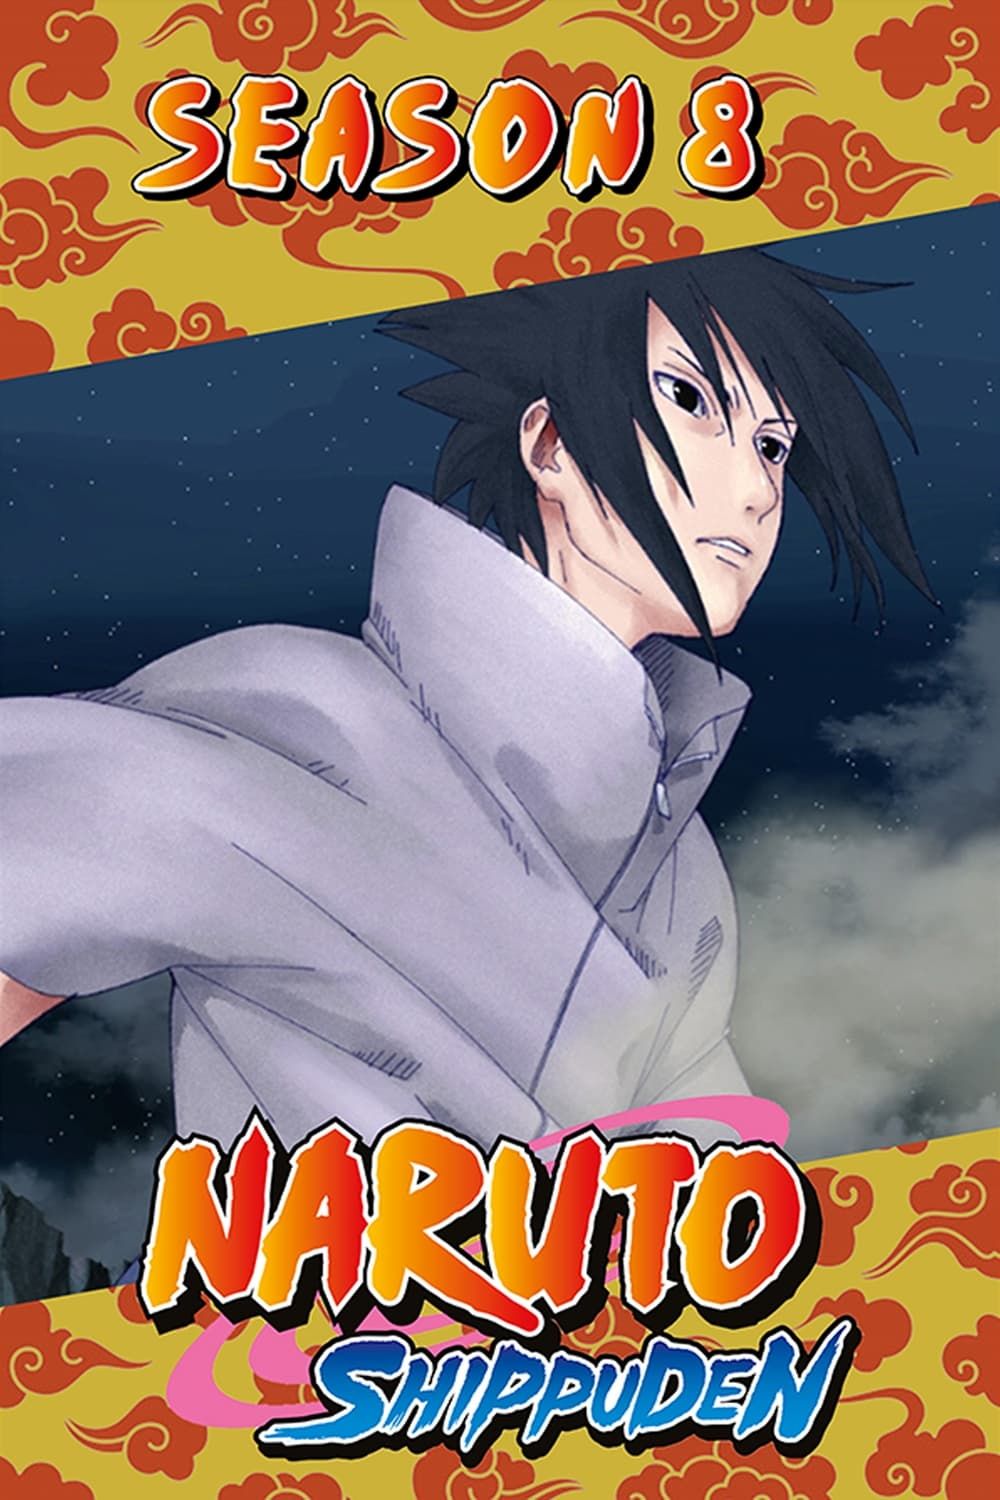 Anime-ice: Naruto Clássico e Naruto Shippuuden Resumo!!